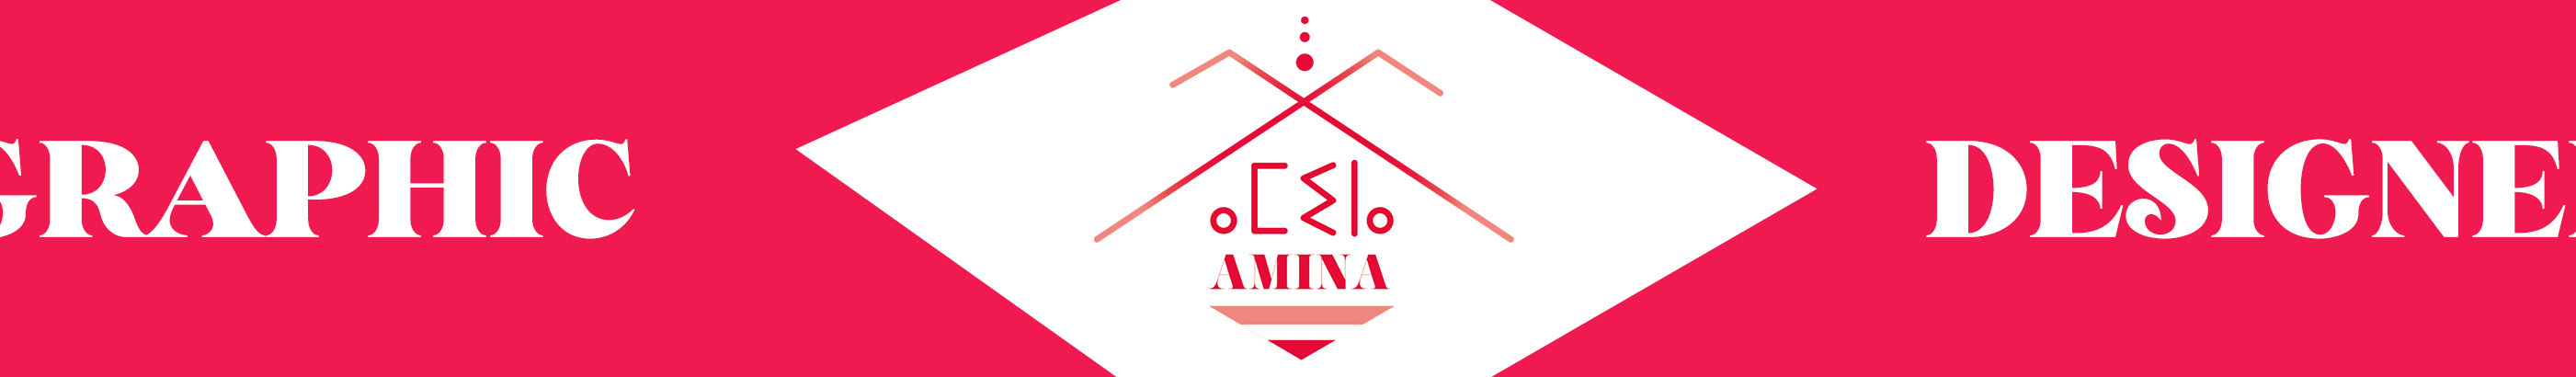 Banner de perfil de Amina M.